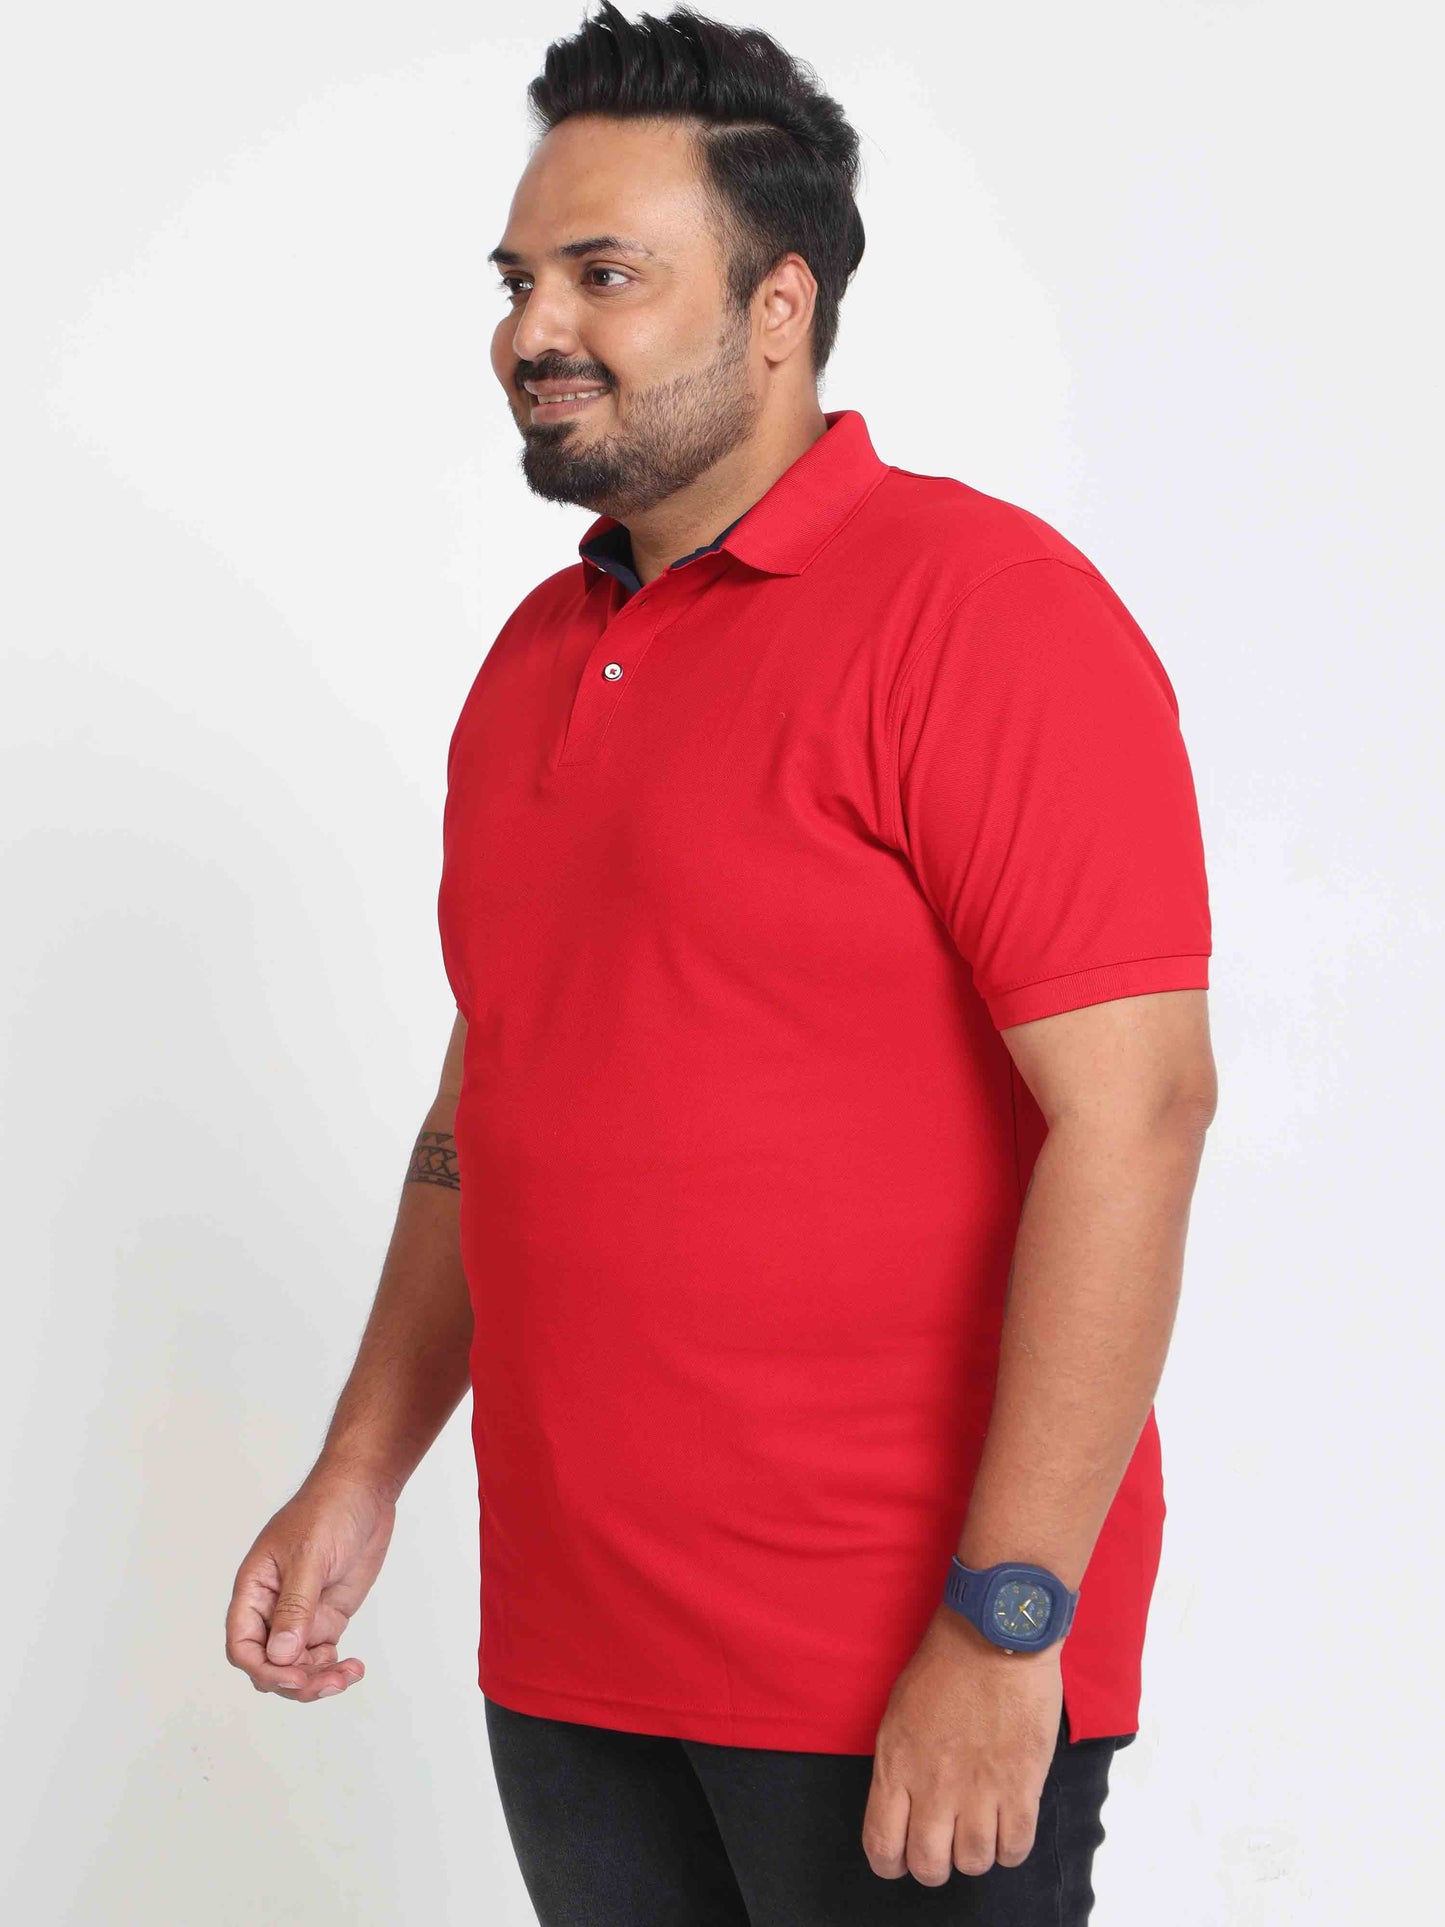 Plus Size Arrow Red Men's Polo T-shirt